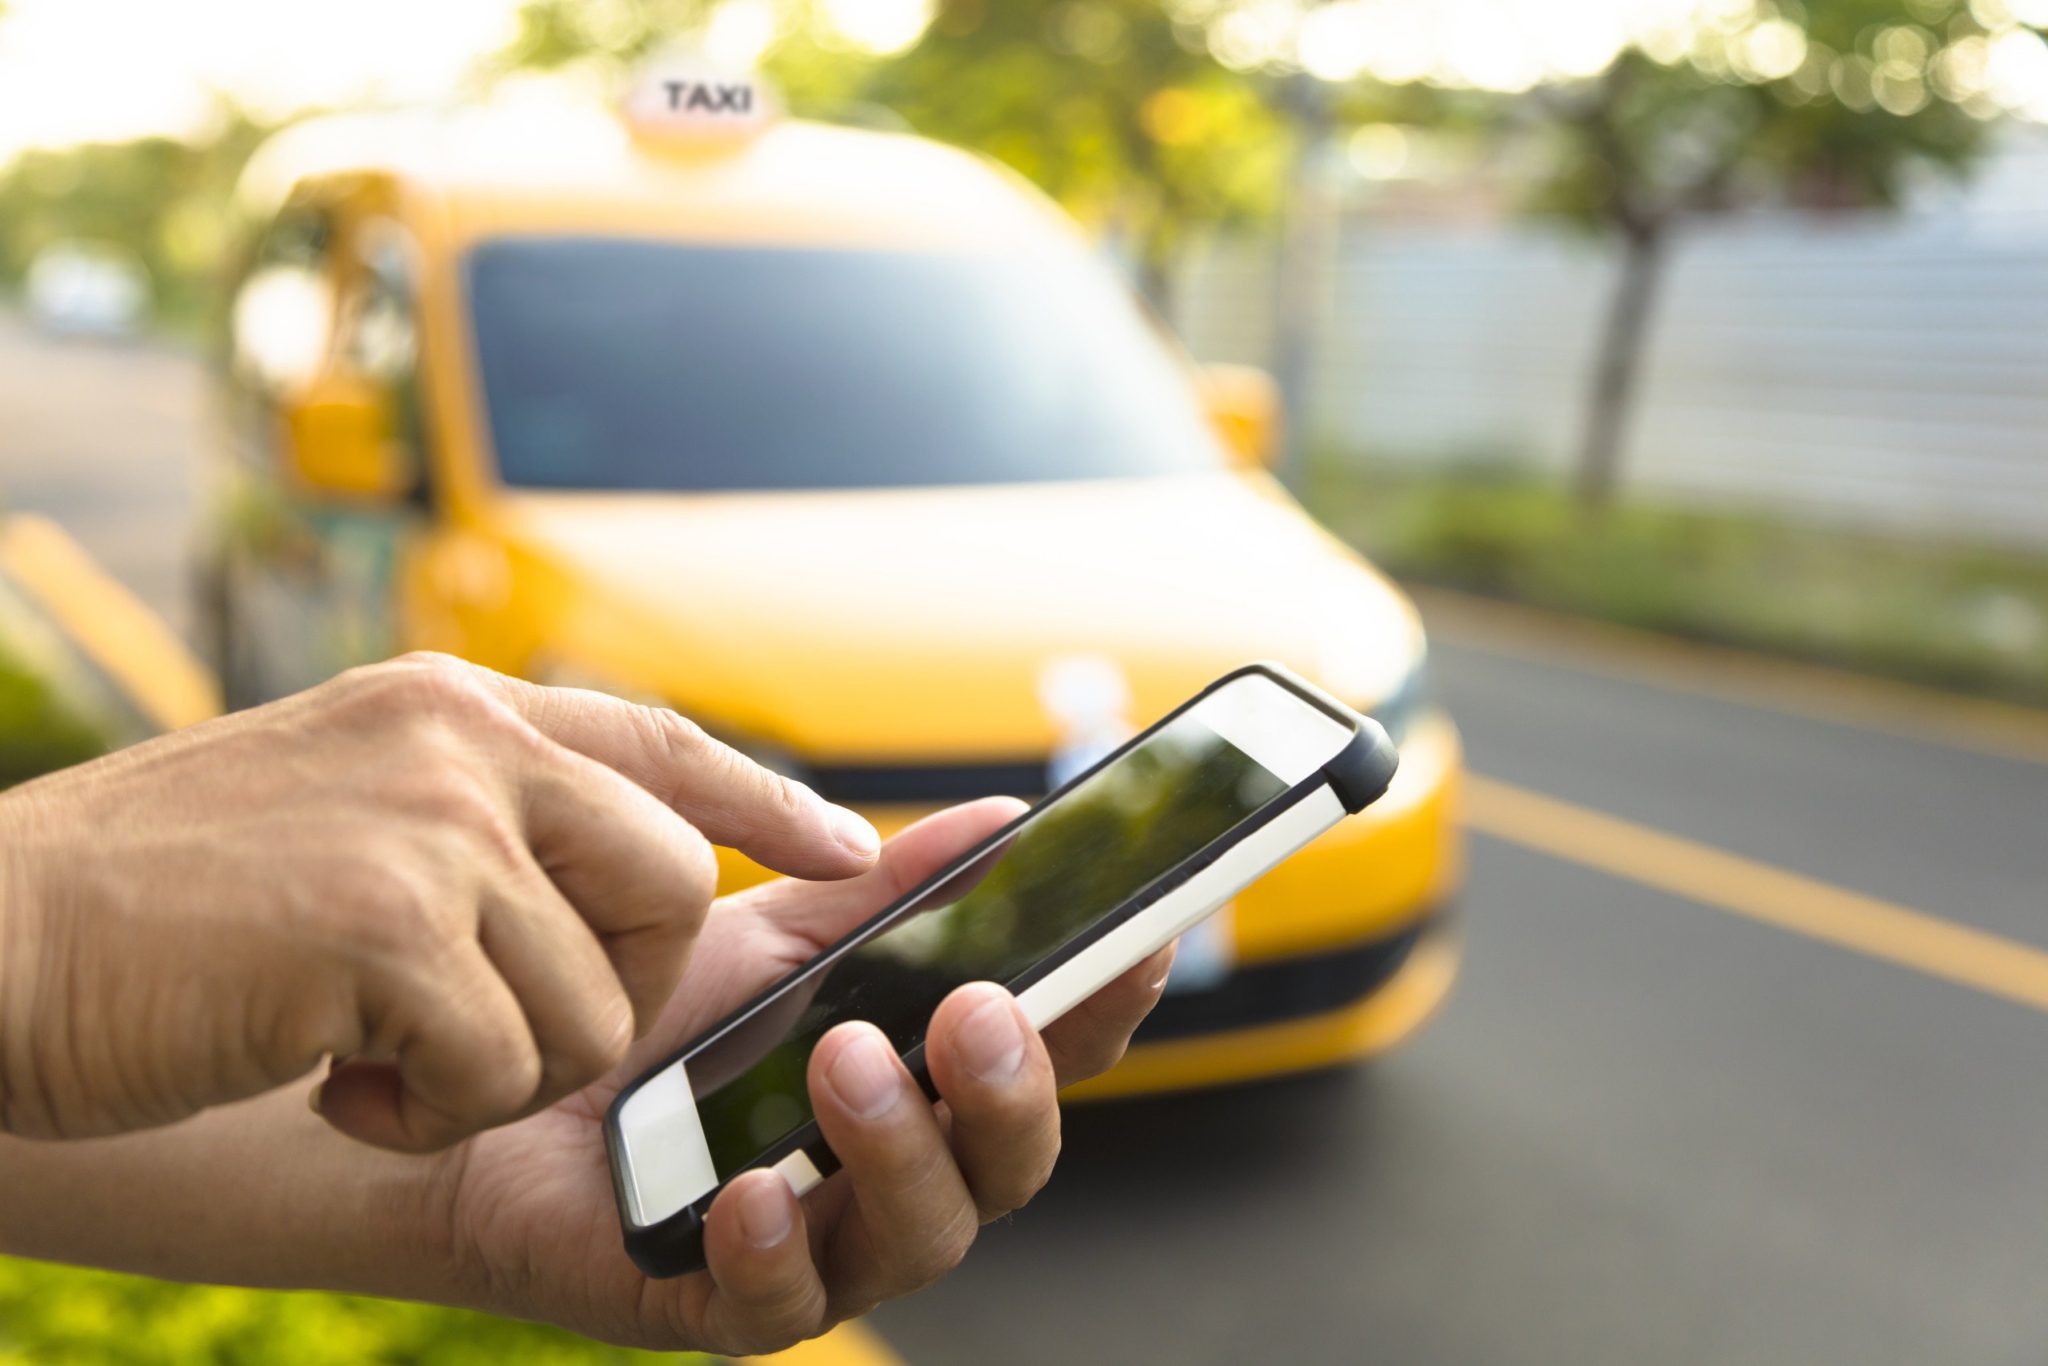 Le ministère du Transport: Les applications mobiles de taxis sont illégales [Vidéo]